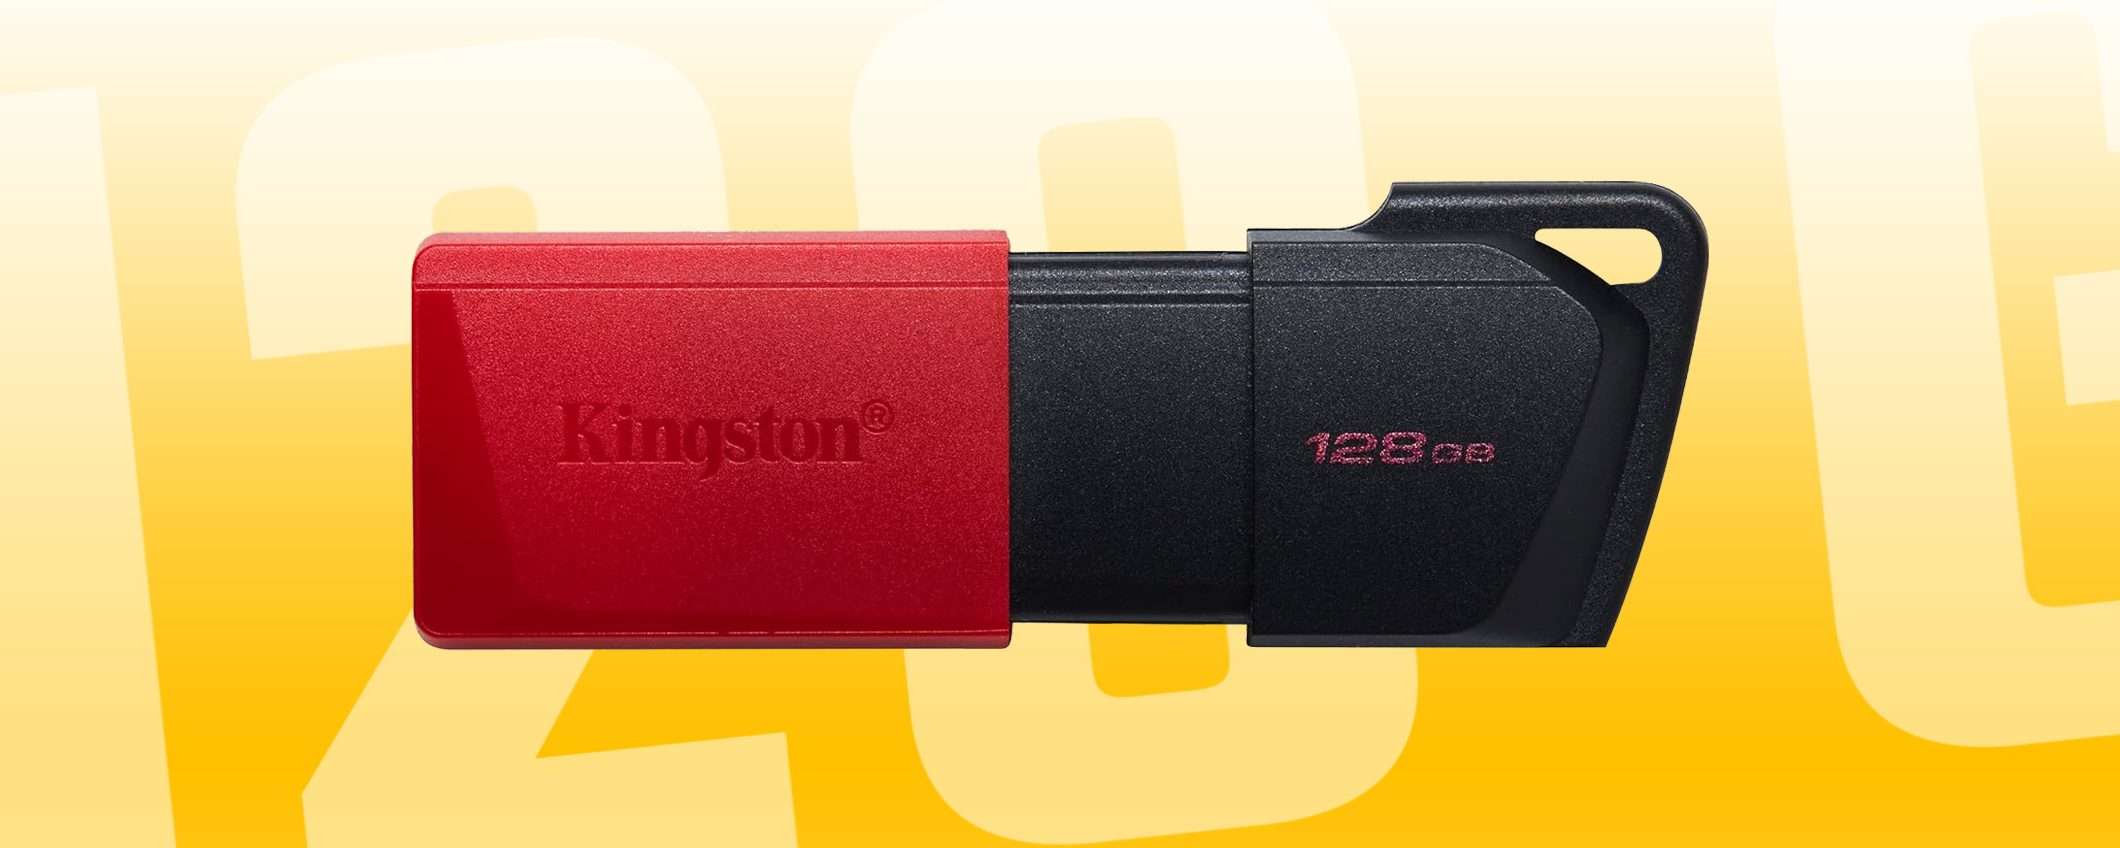 Pendrive Kingston da 128 GB a 10€: GIÙ IL PREZZO